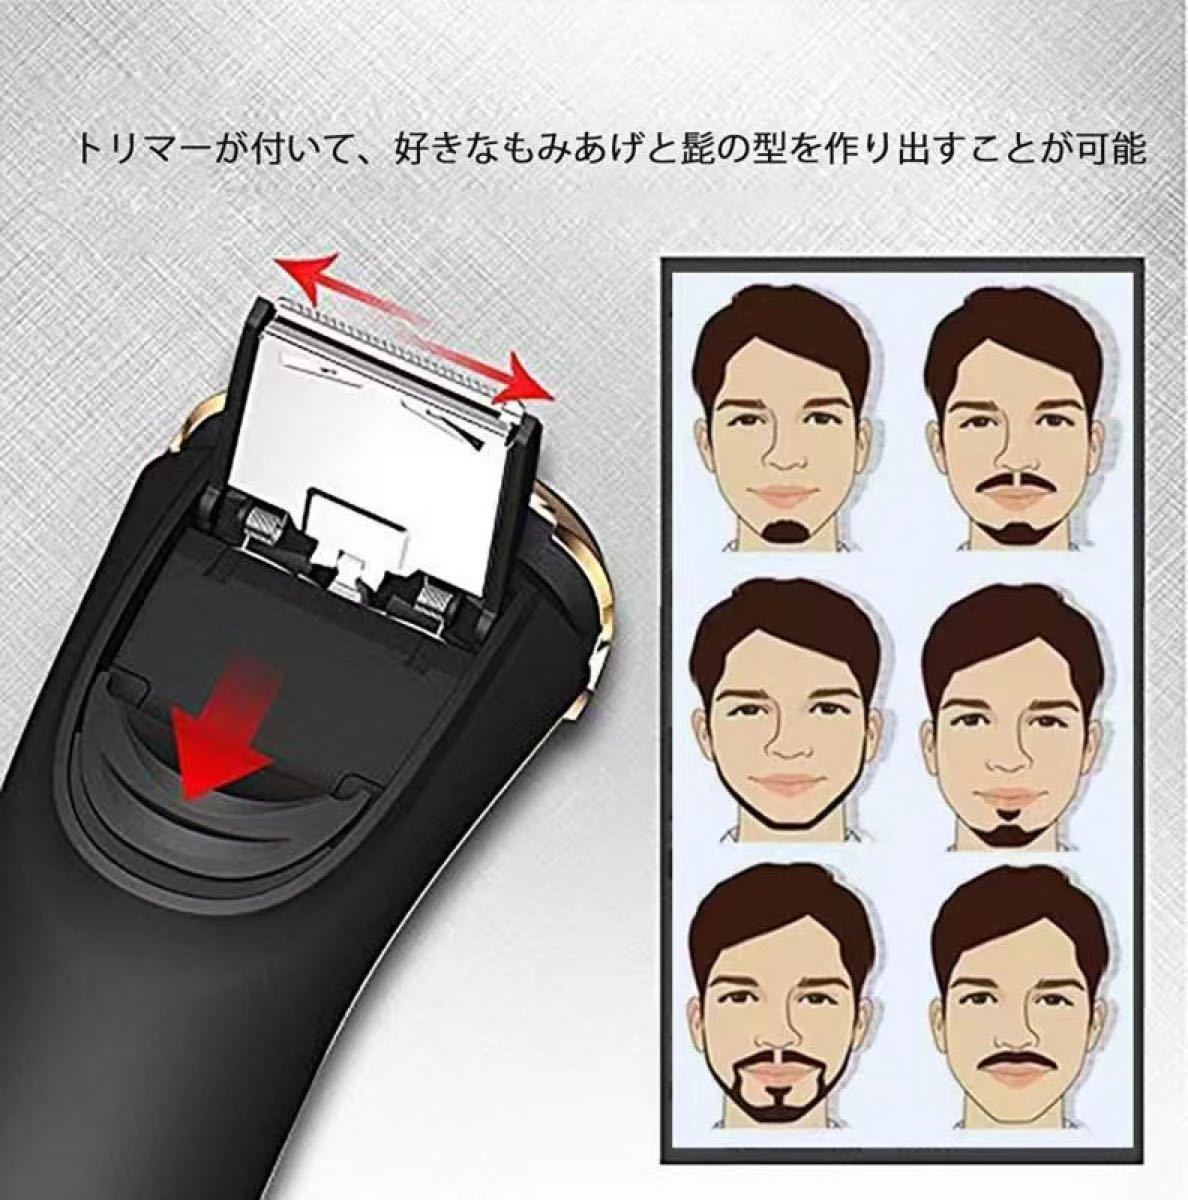 シェーバー メンズ 髭剃り 電気シェーバー 回転式 IPX7防水 深剃り お風呂剃り 丸洗い可  USB充電式 充電中利用可 